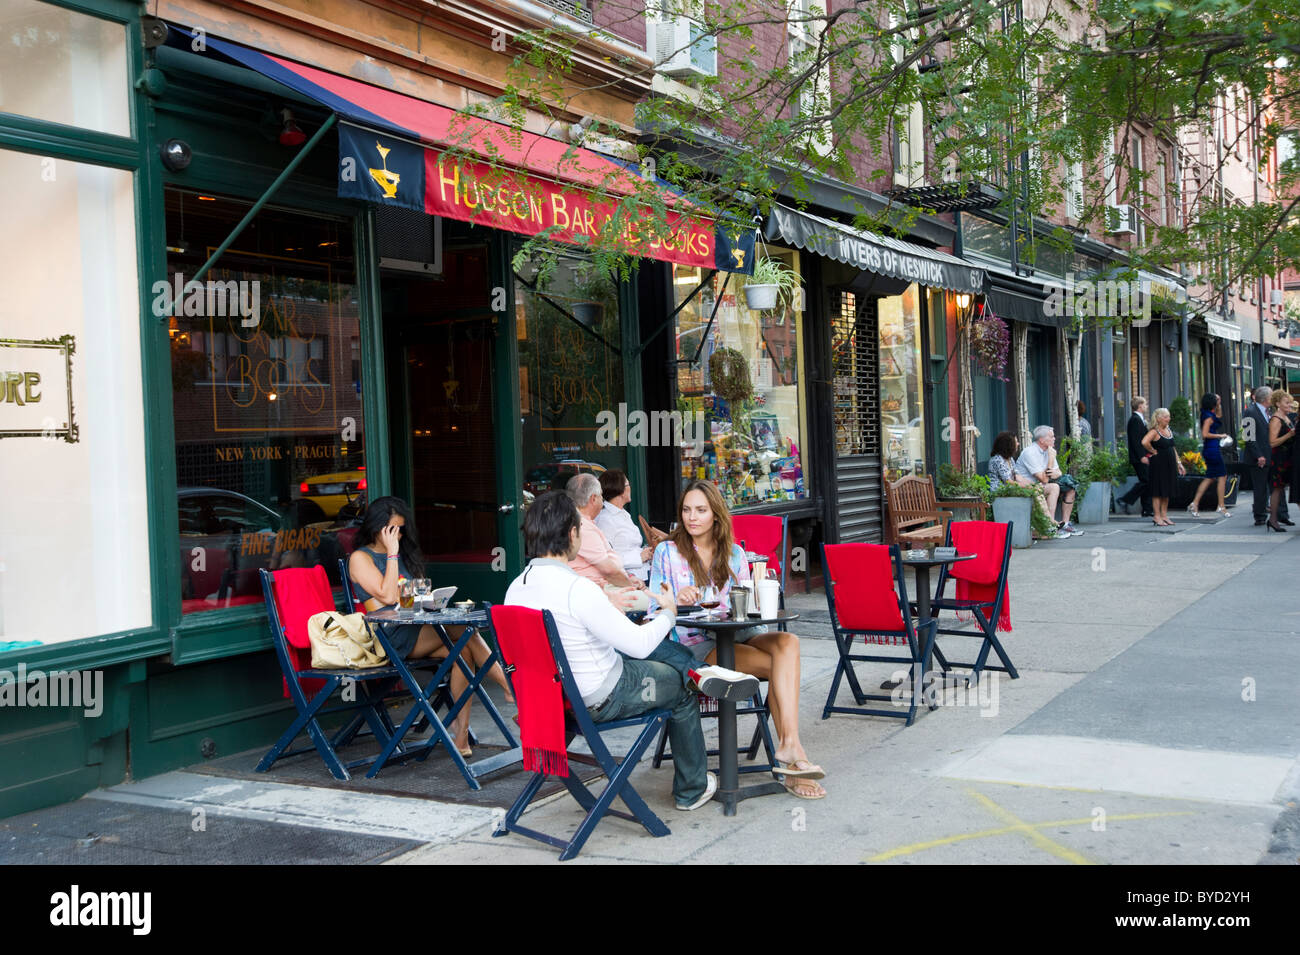 Bar et livres sur Hudson Street à Greenwich Village, New York City, États-Unis d'Amérique Banque D'Images